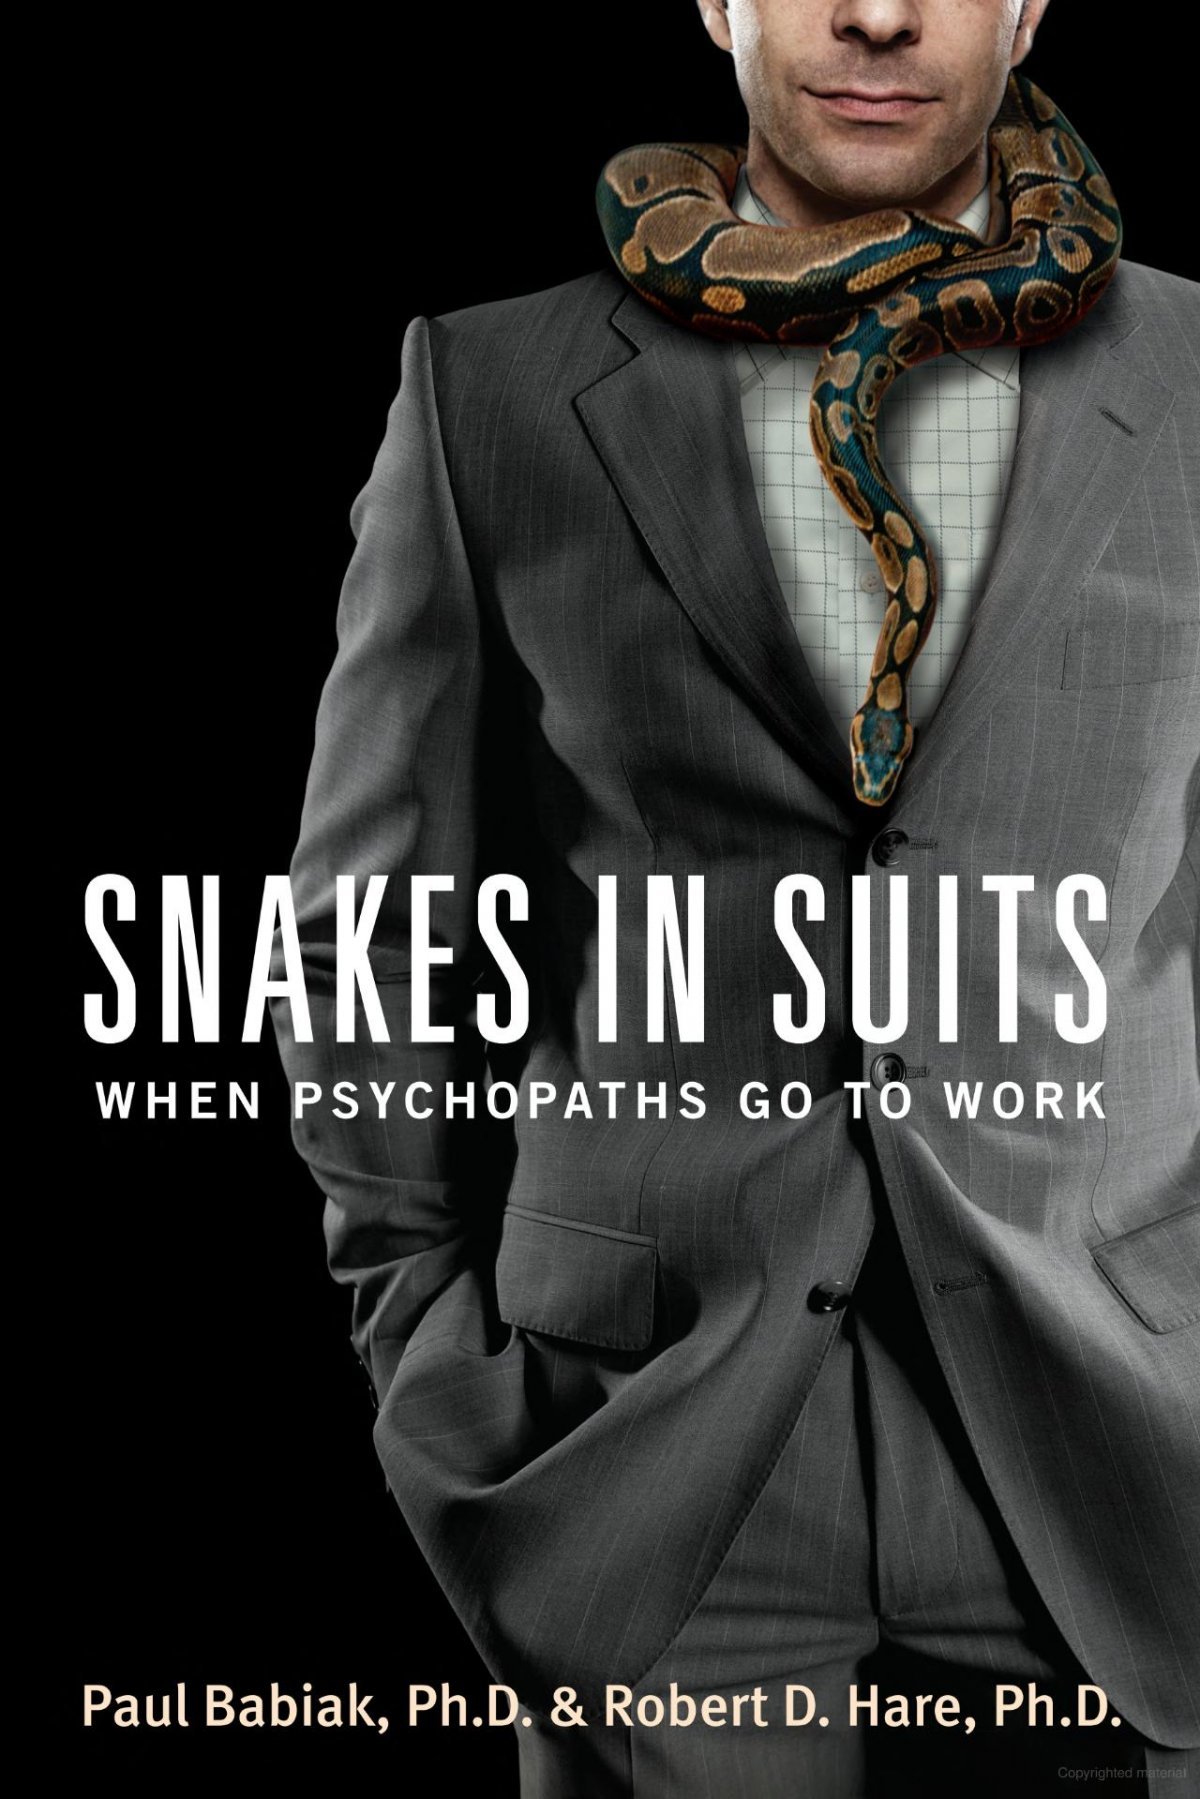 로버트 헤어 교수와 폴 바비악 박사의 공저 ‘정장을 입은 뱀(Snakes in suits)’의 표지. 뱀을 목에 두른 직장인 표지 삽화가 상당히 직관적이다. 하퍼콜린스